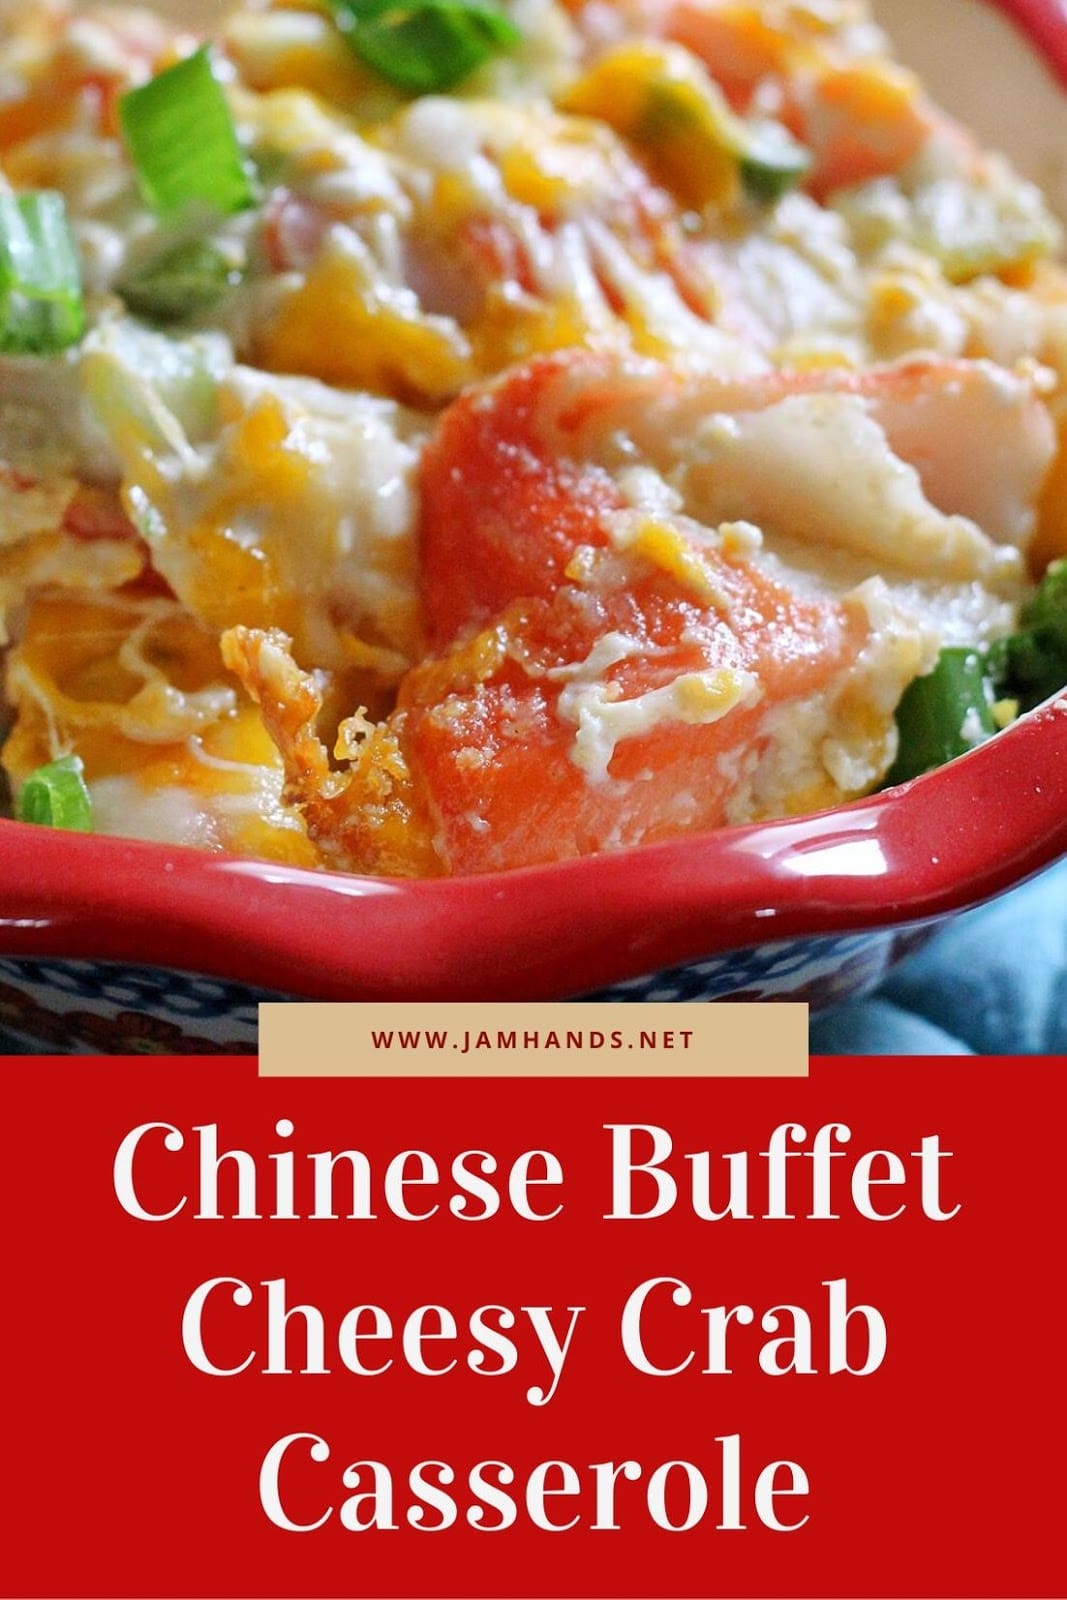 Chinese Buffet Cheesy Crab Casserole